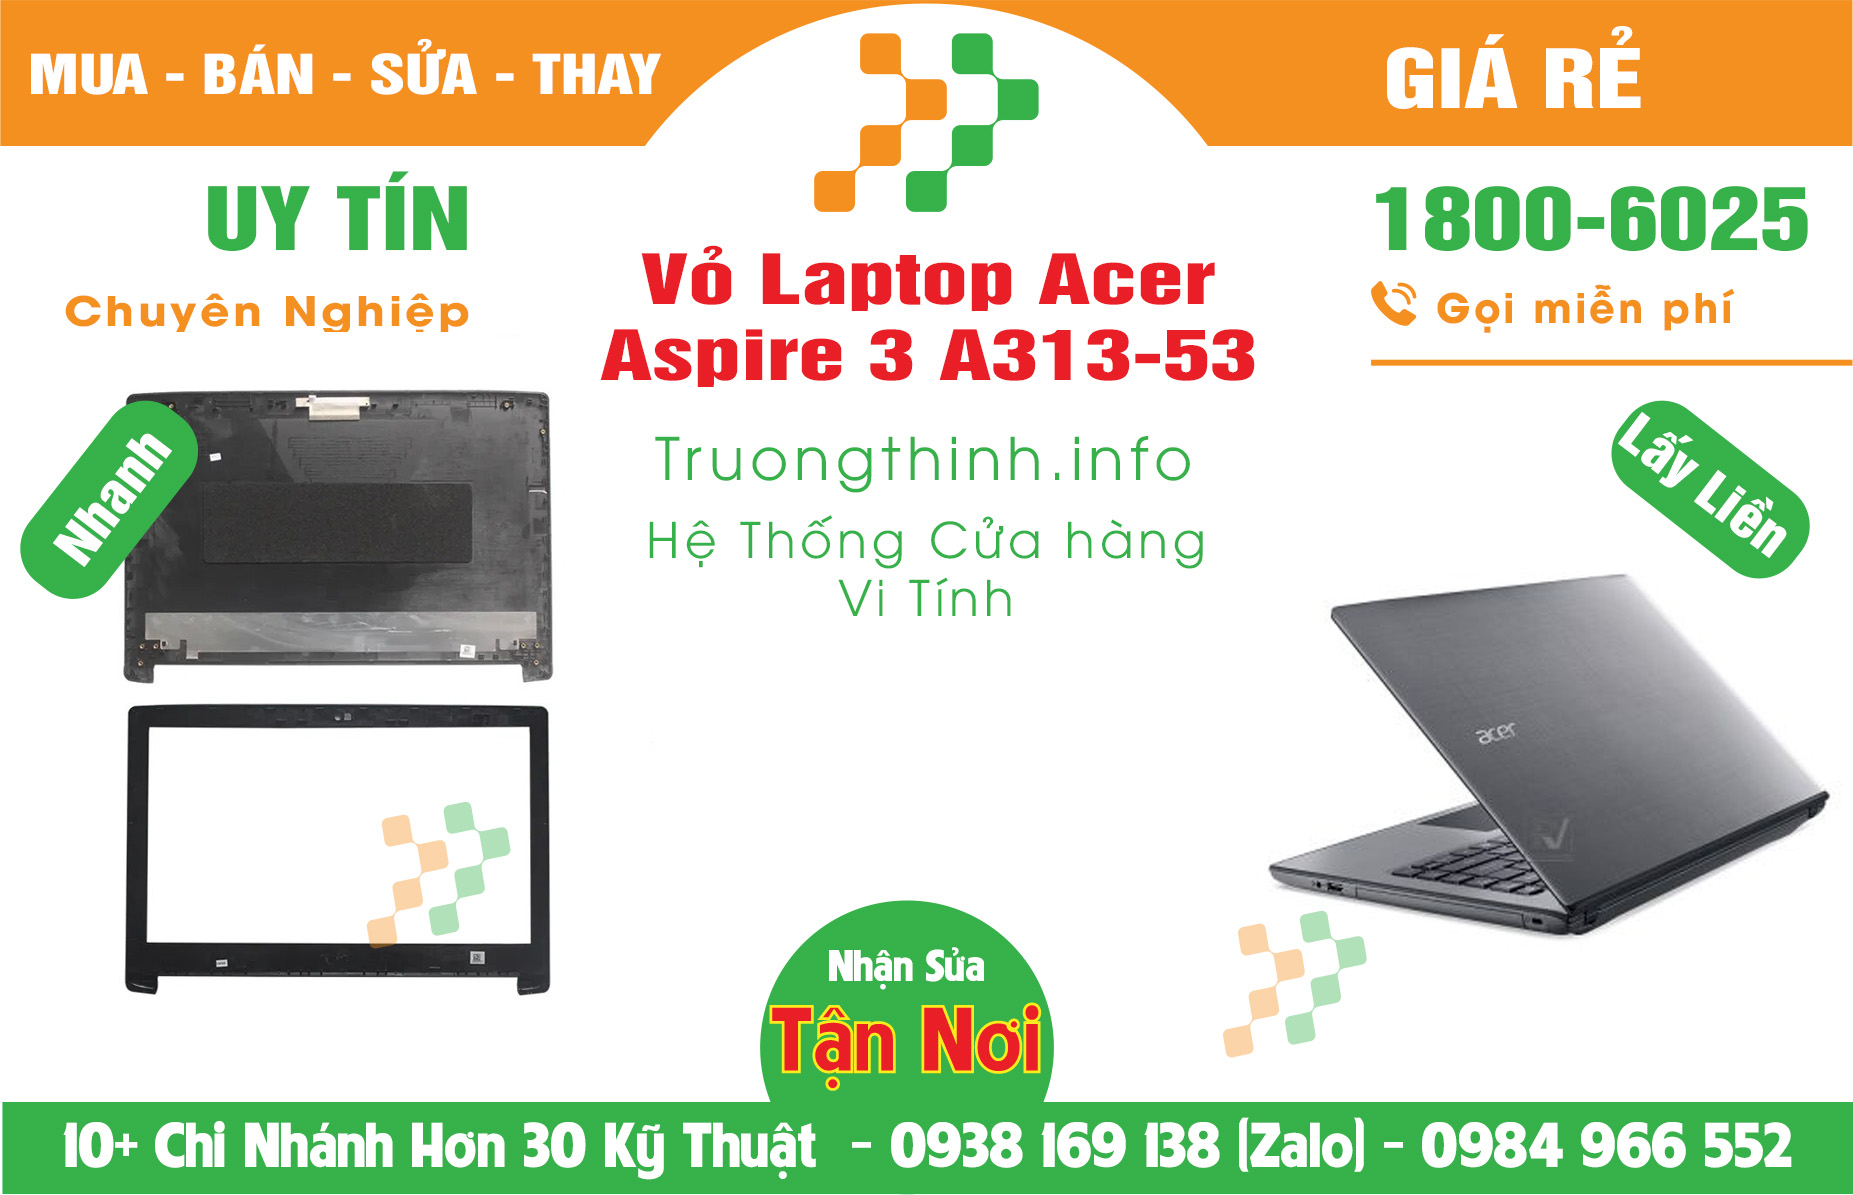 Mua Bán Vỏ Laptop Acer Aspire 3 A313-53 Giá Rẻ | Máy Tính Trường Thịnh Giá Rẻ